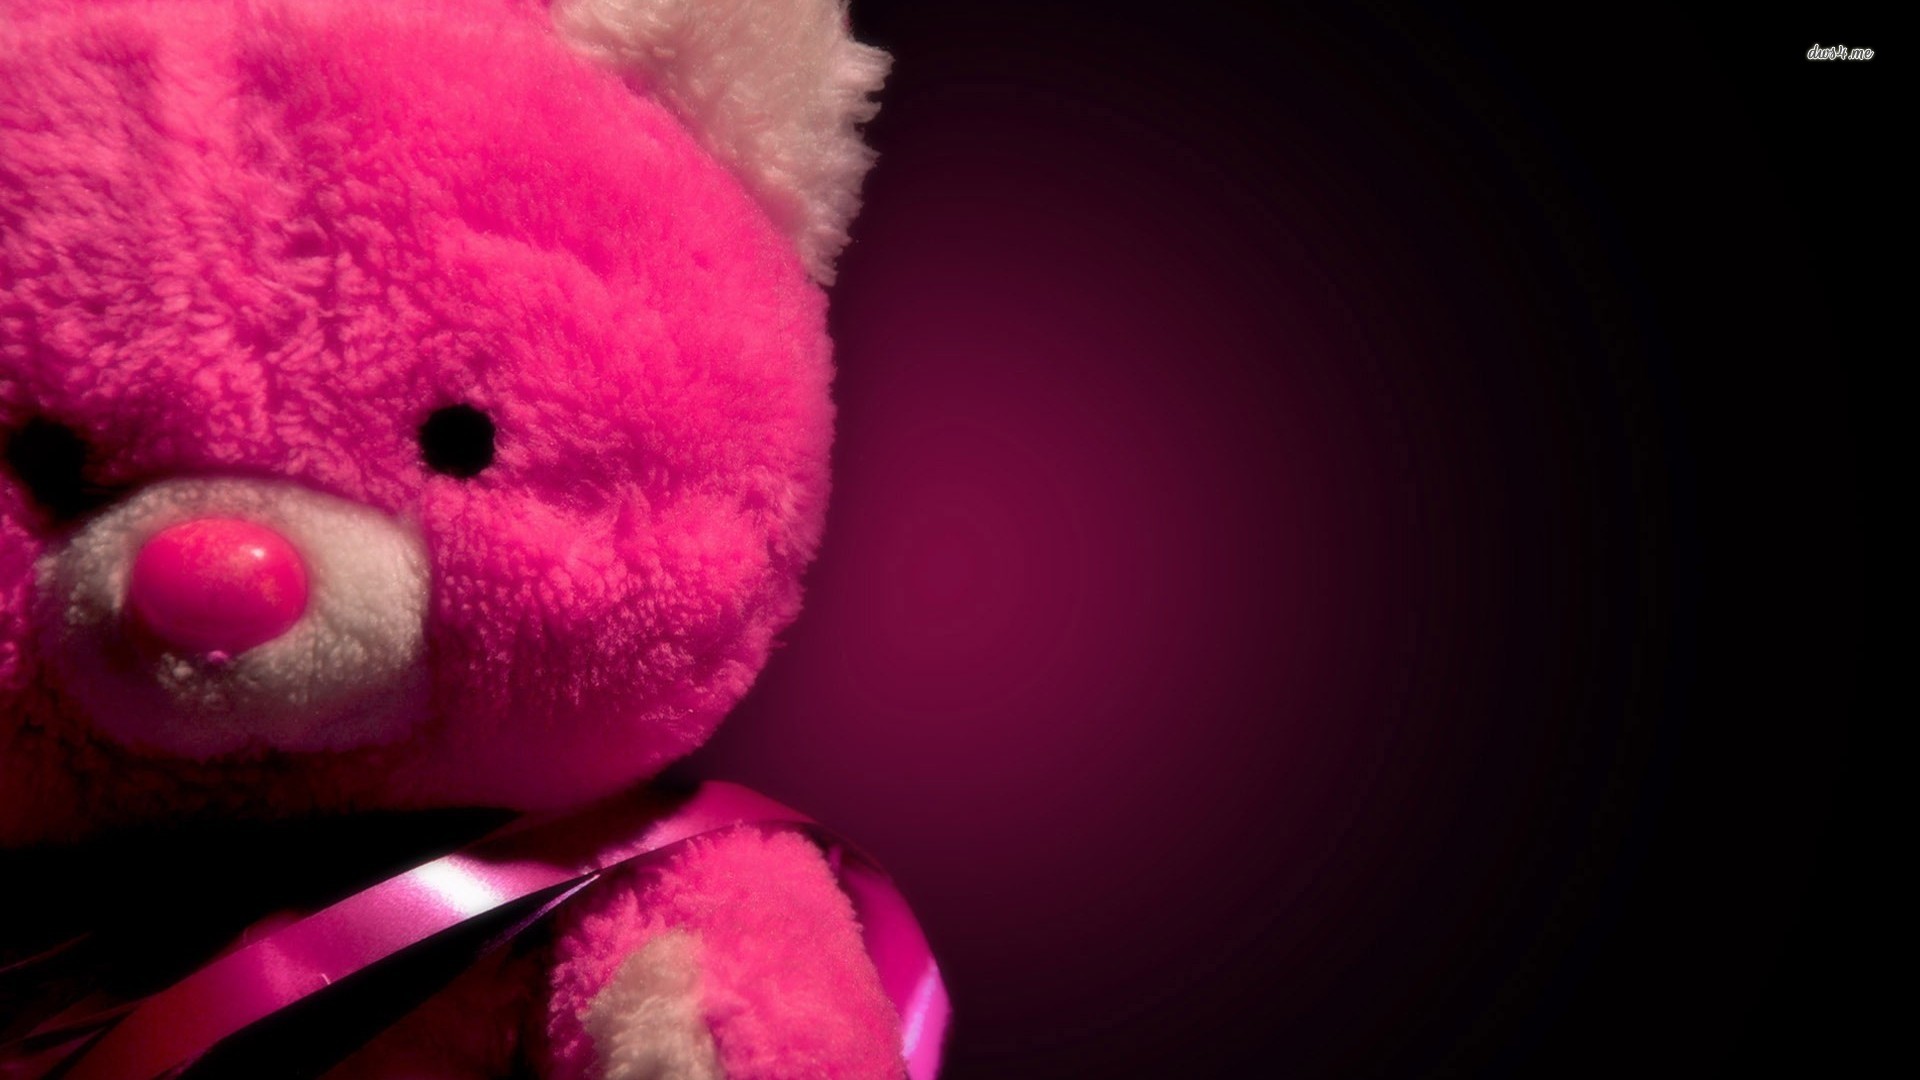 rosa bär tapete,teddybär,plüschtier,rosa,plüsch,spielzeug